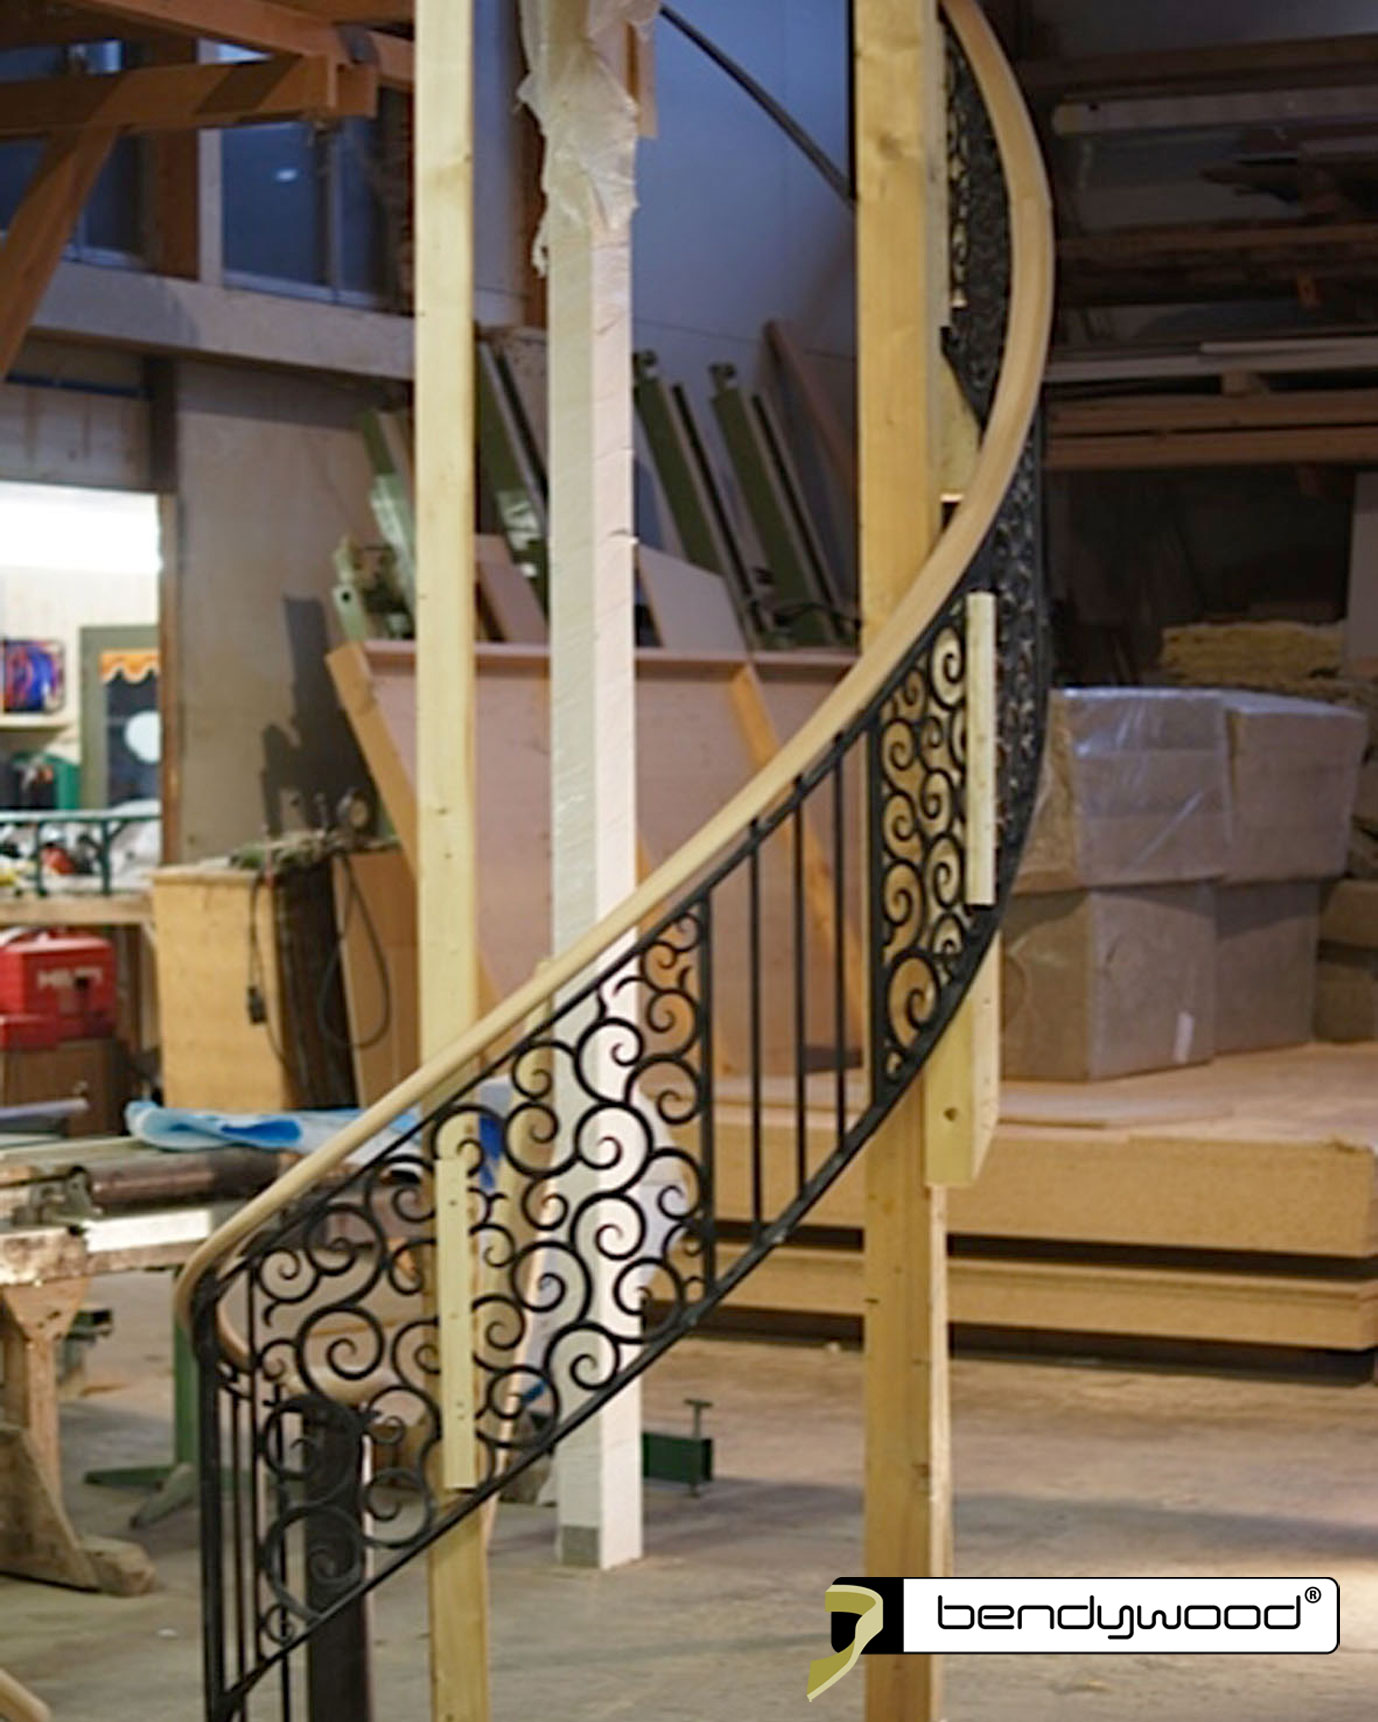 Ovaler Handlauf in Bendywood®-Buche für gebogene Treppe mit Schmiedeeisen Geländer 